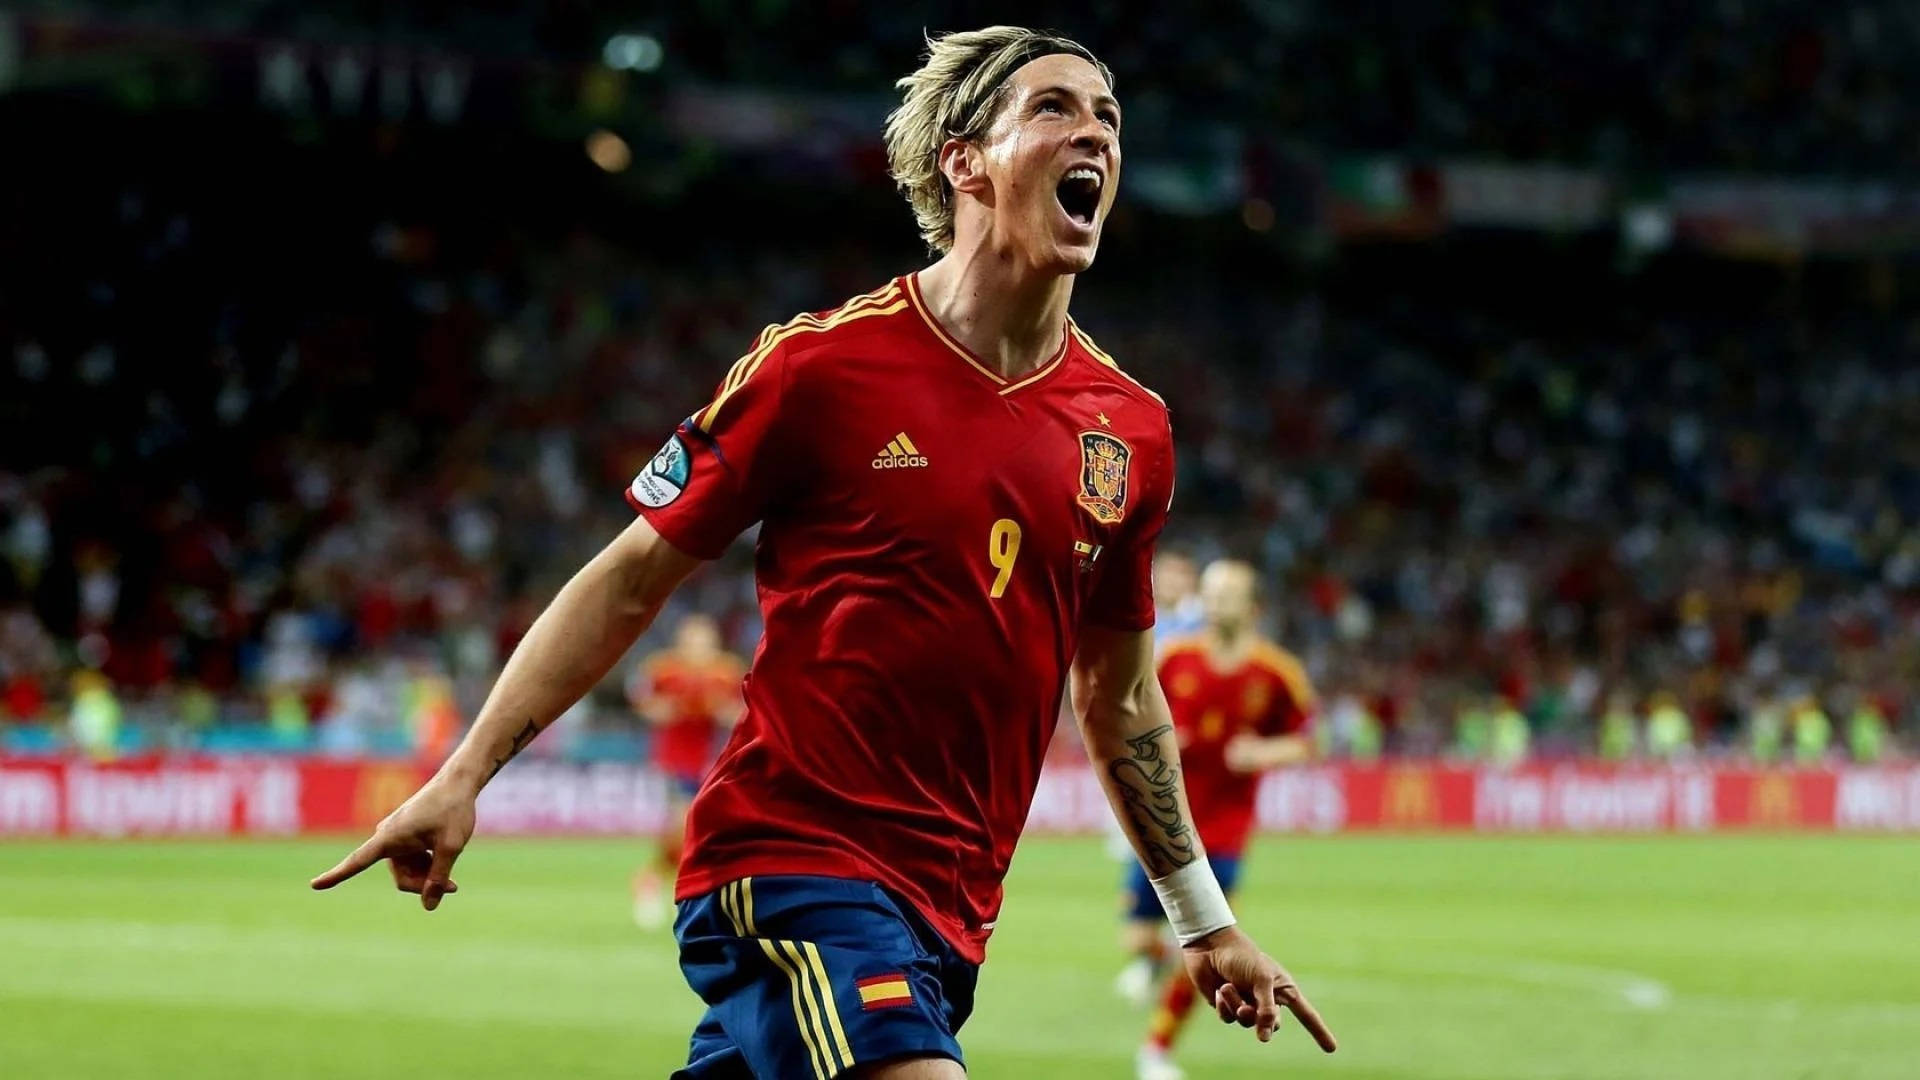 Equipanacional De Futebol De Espanha Para O Euro 2012 Com Fernando Torres Como Protagonista Do Papel De Parede Para Computador Ou Telemóvel. Papel de Parede